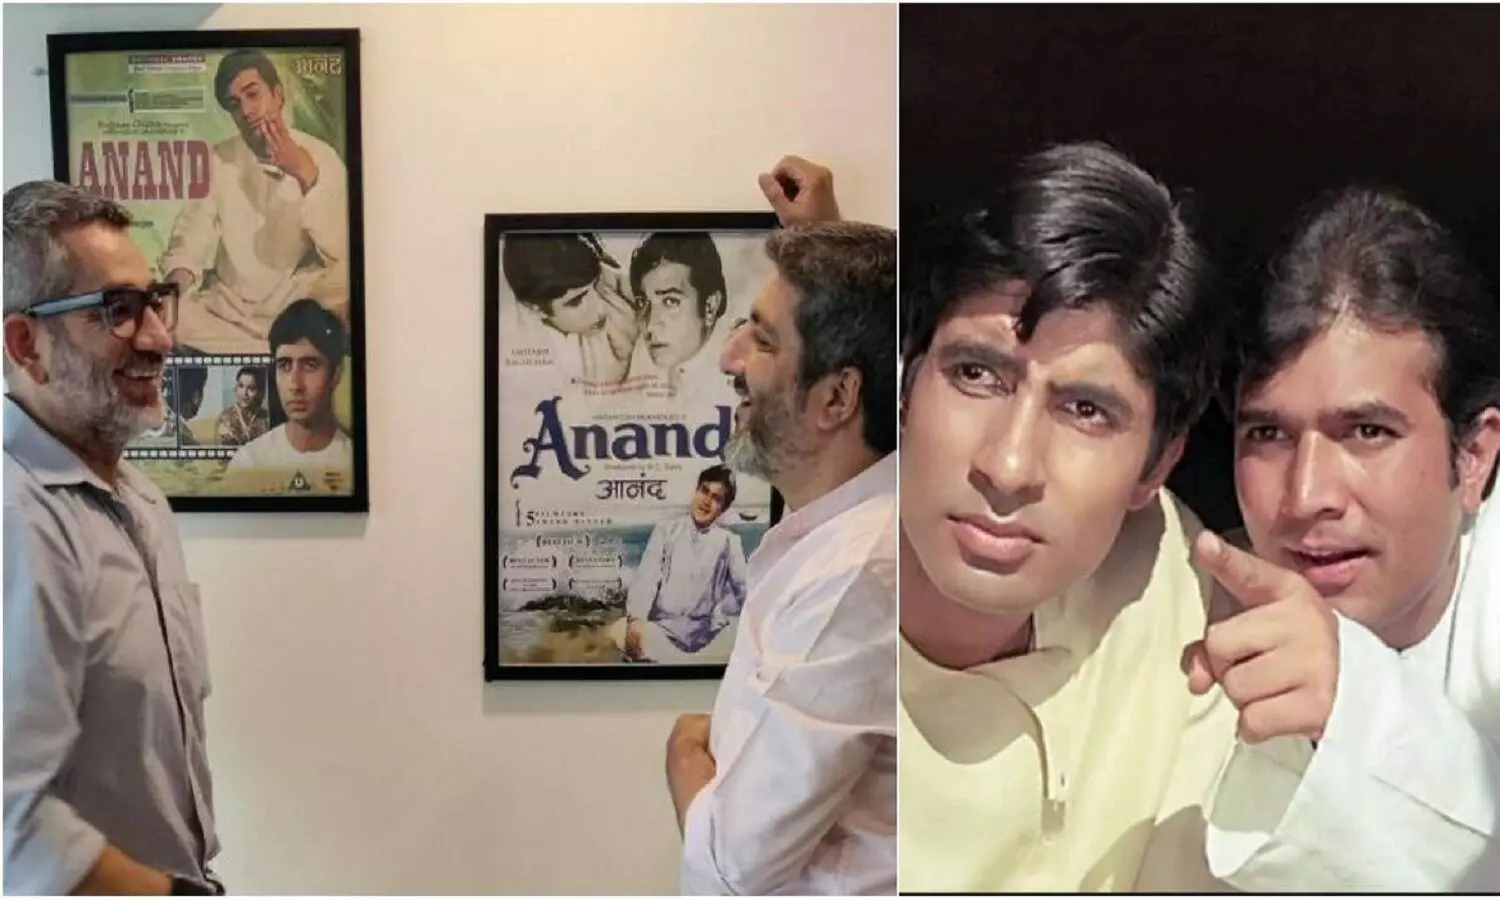 Anand Movie Remake: राजेश खन्ना और अमिताभ बच्चन की फिल्म आनंद का रीमेक बनने वाला है, पर लोग इससे खुश नहीं है